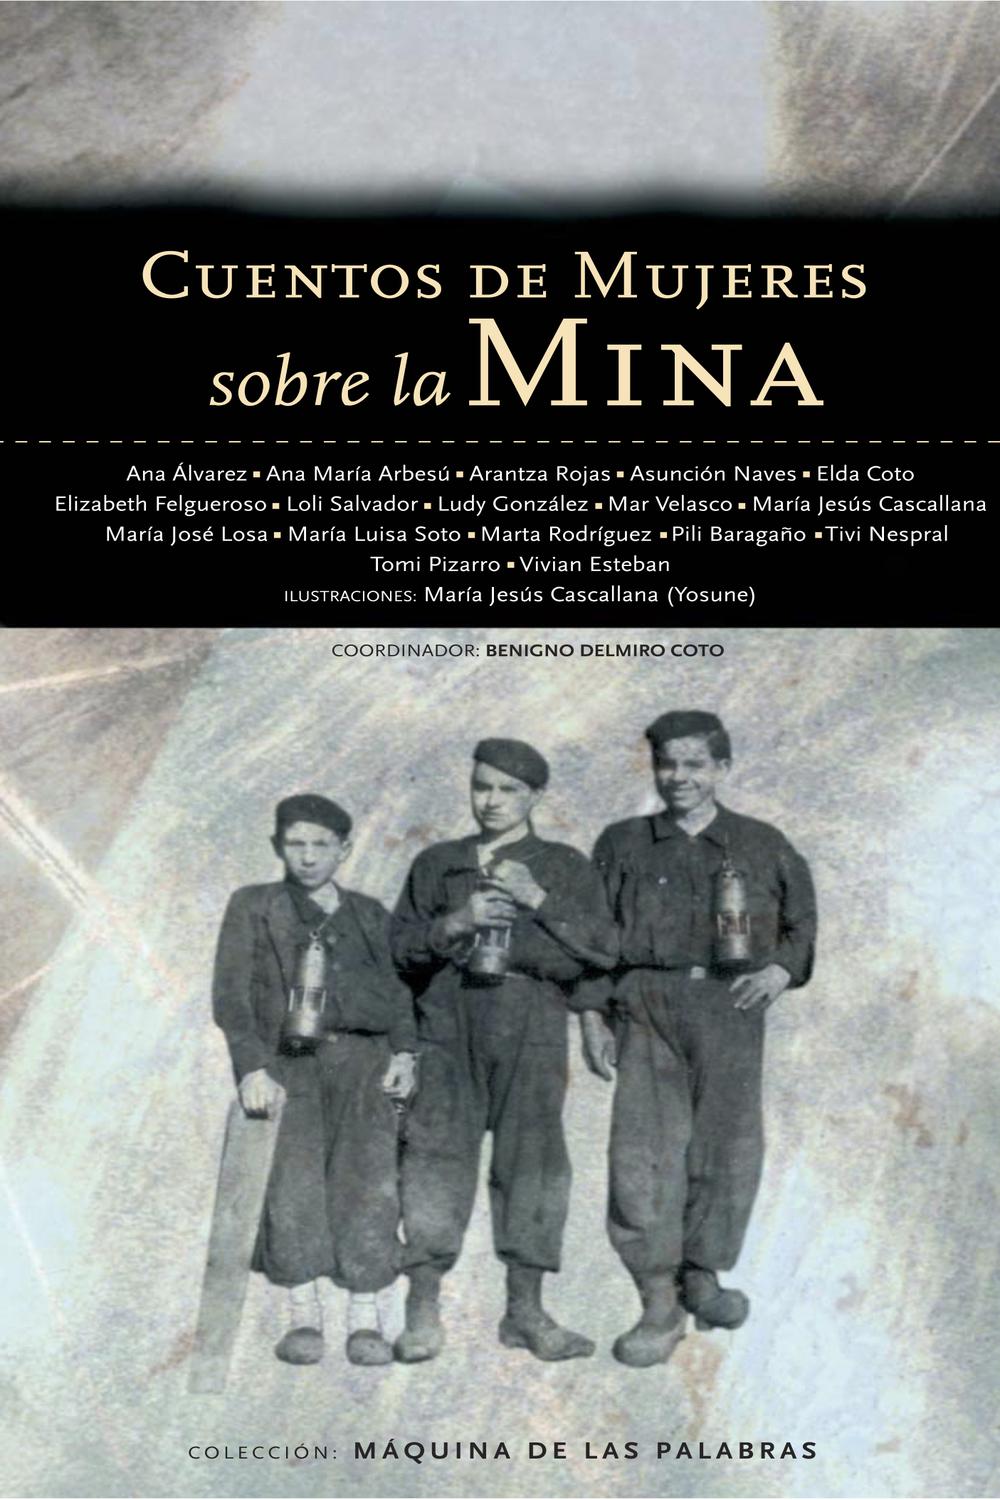 Cuentos de mujeres sobre la mina - Colectivo sociocultural Les Filanderes , VV.AA., Benigno Delmiro Coto